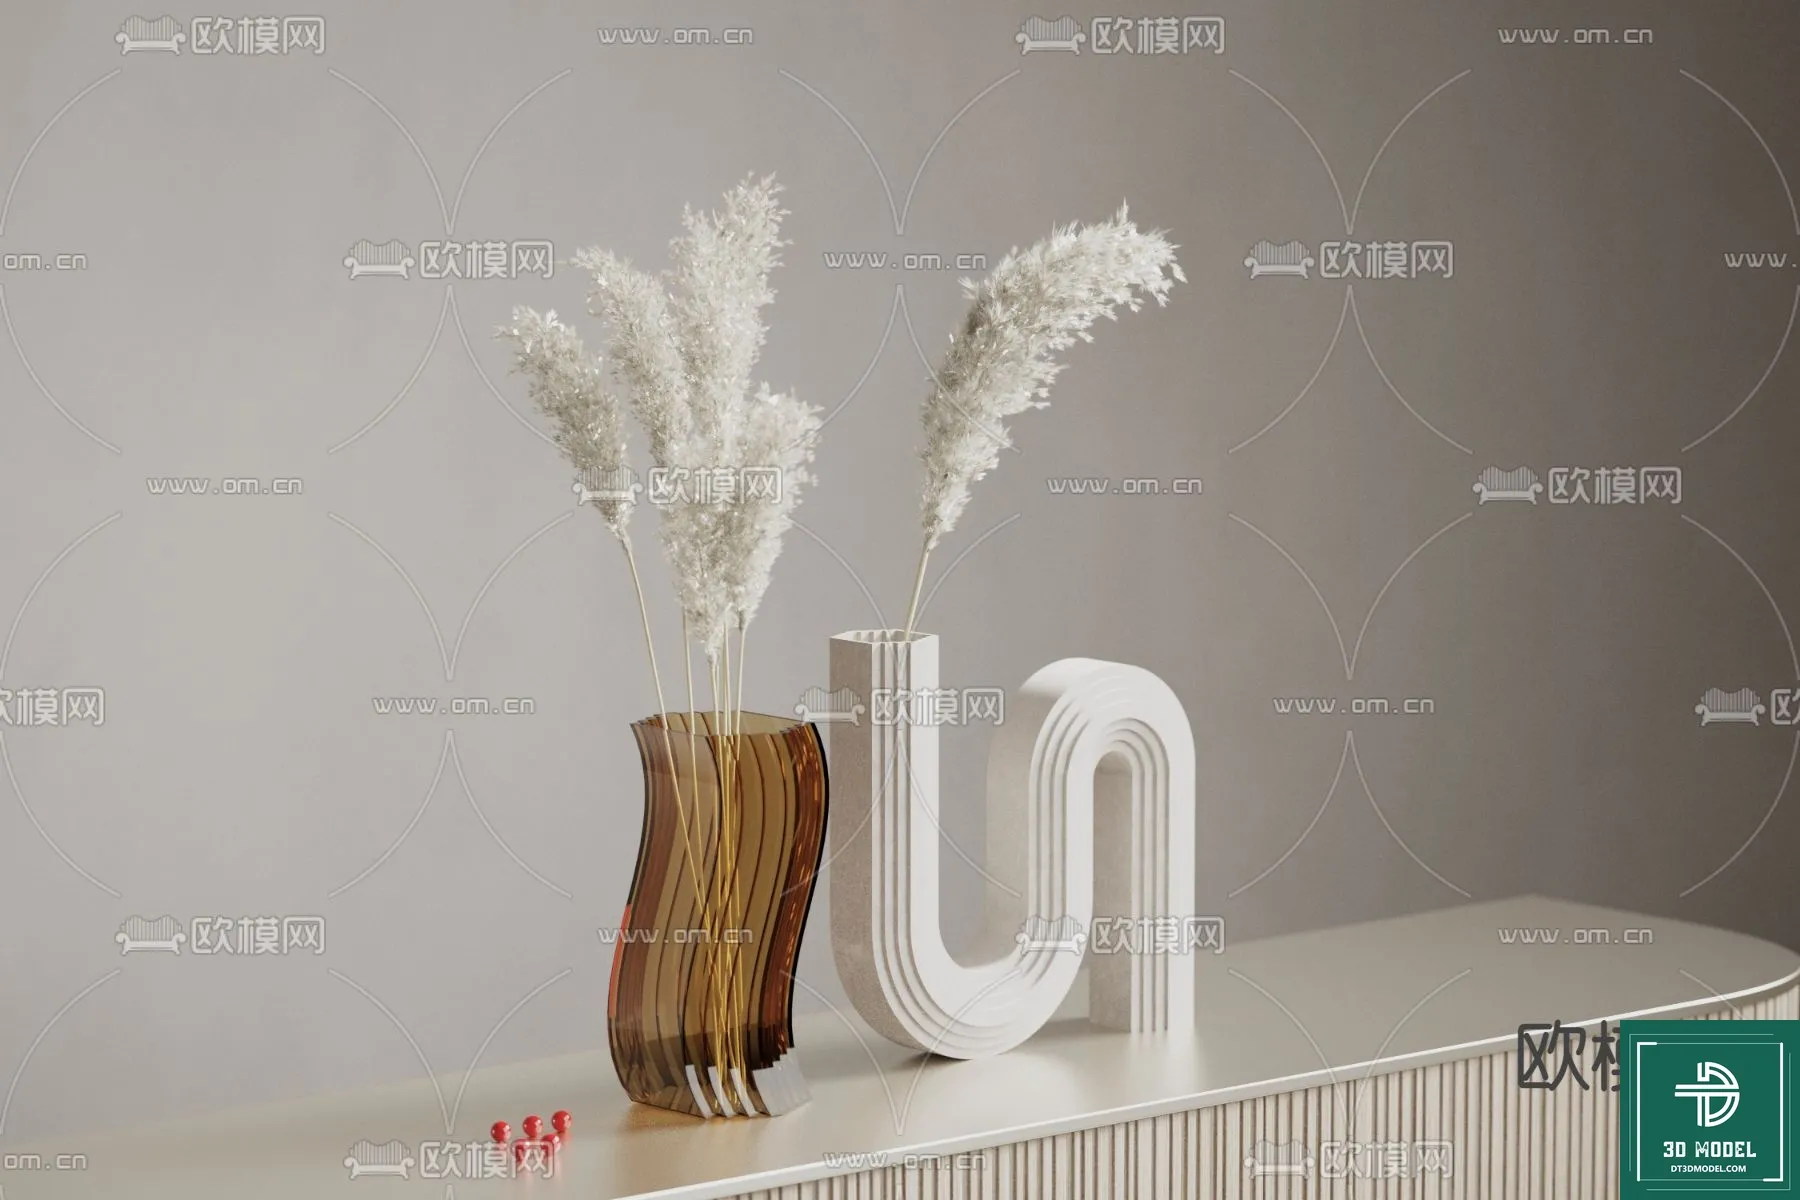 FLOWER VASE 3D MODEL – 085